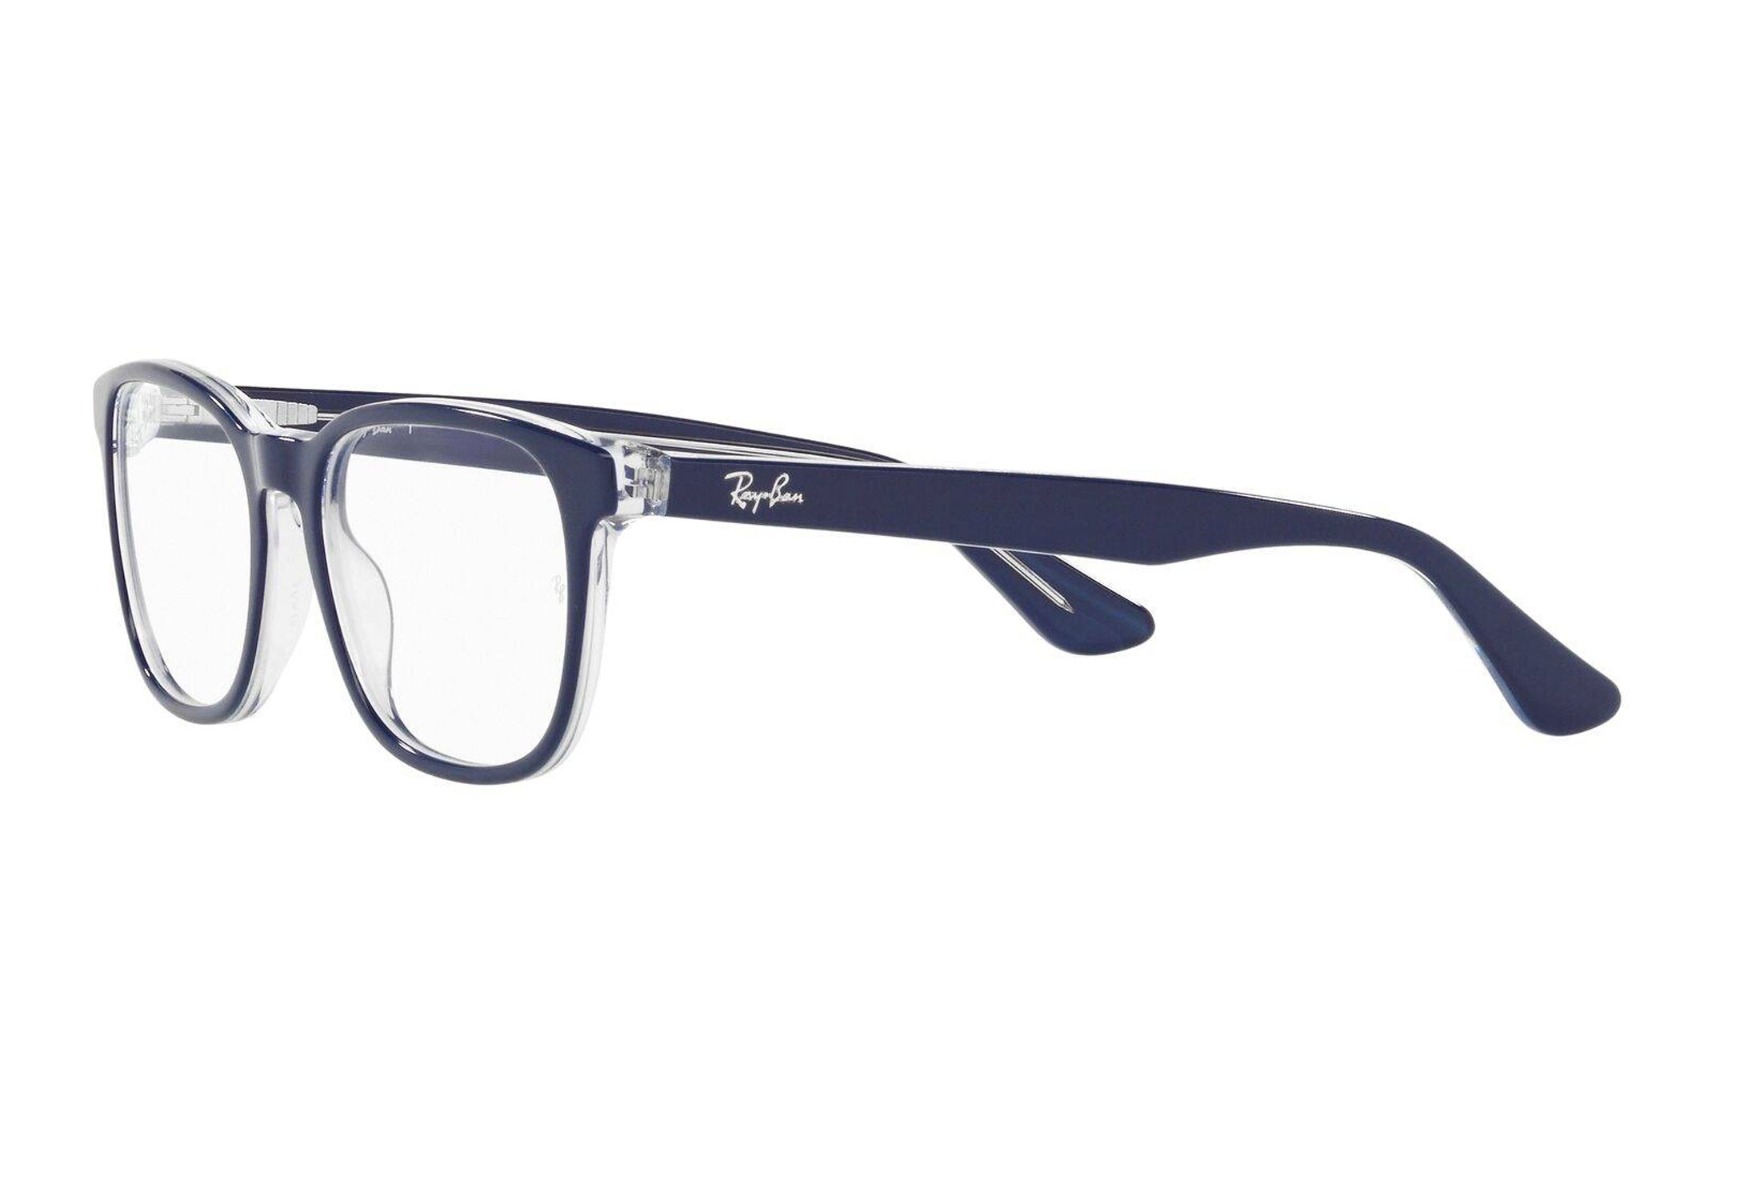 Ray-Ban barne-briller med styrke - ry1592 3853 - Blå